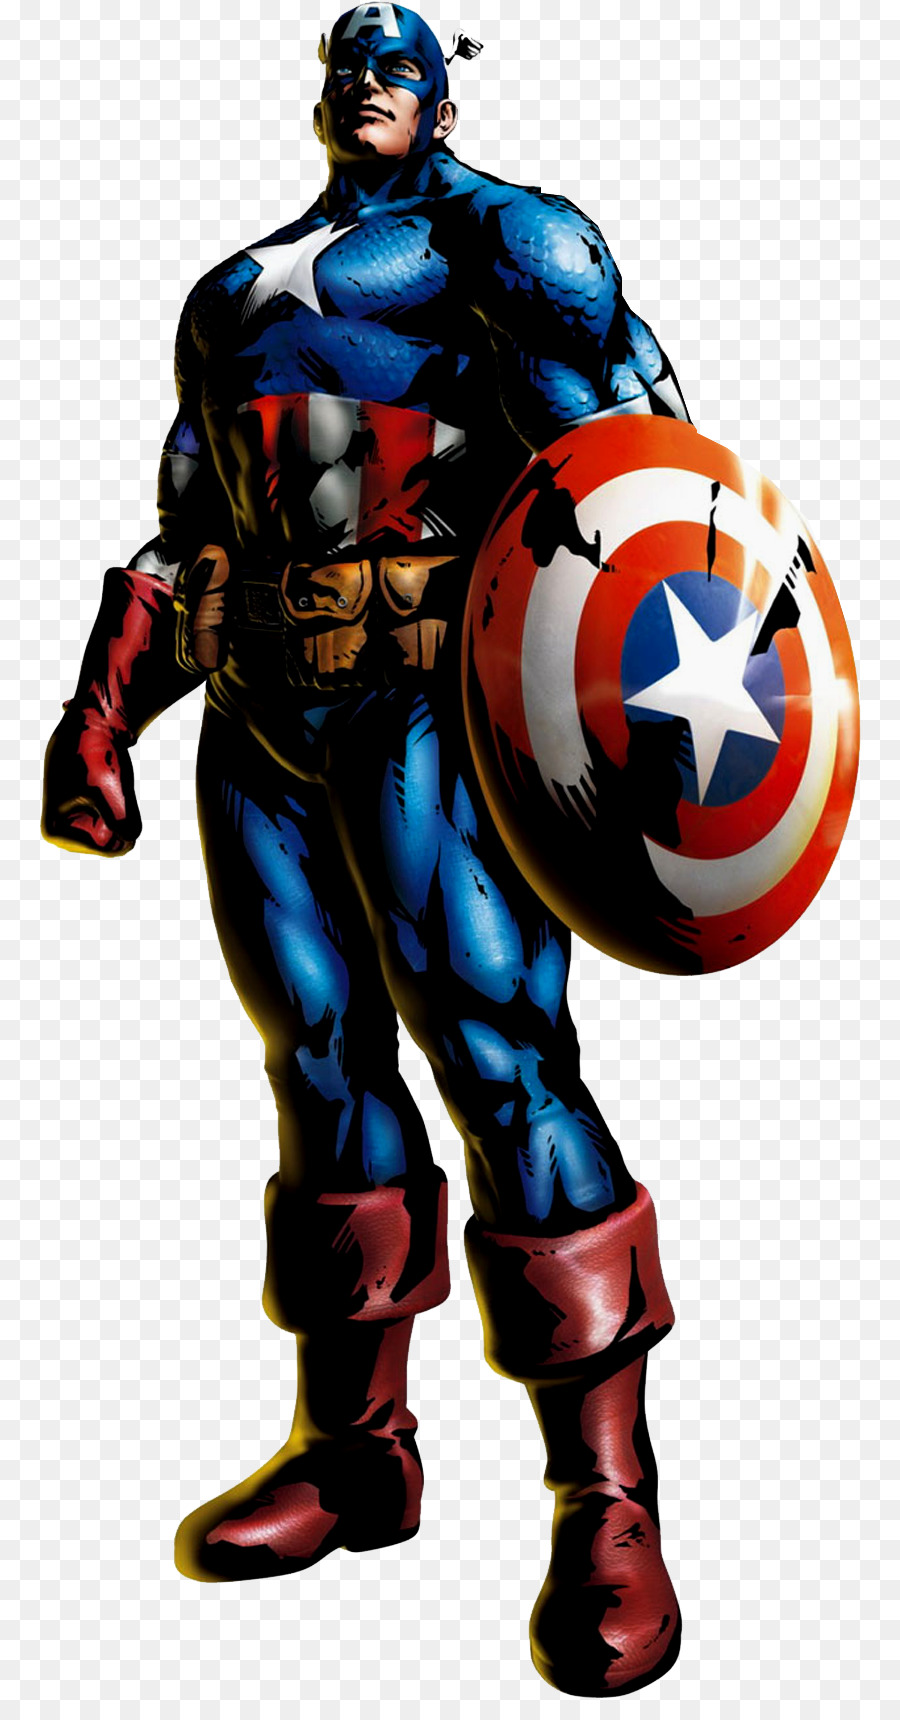 Captain America Deadpool Carol Danvers Marvel Comics - captain-america comic png download - 849*1702 - Free Transparent Captain America png Download.